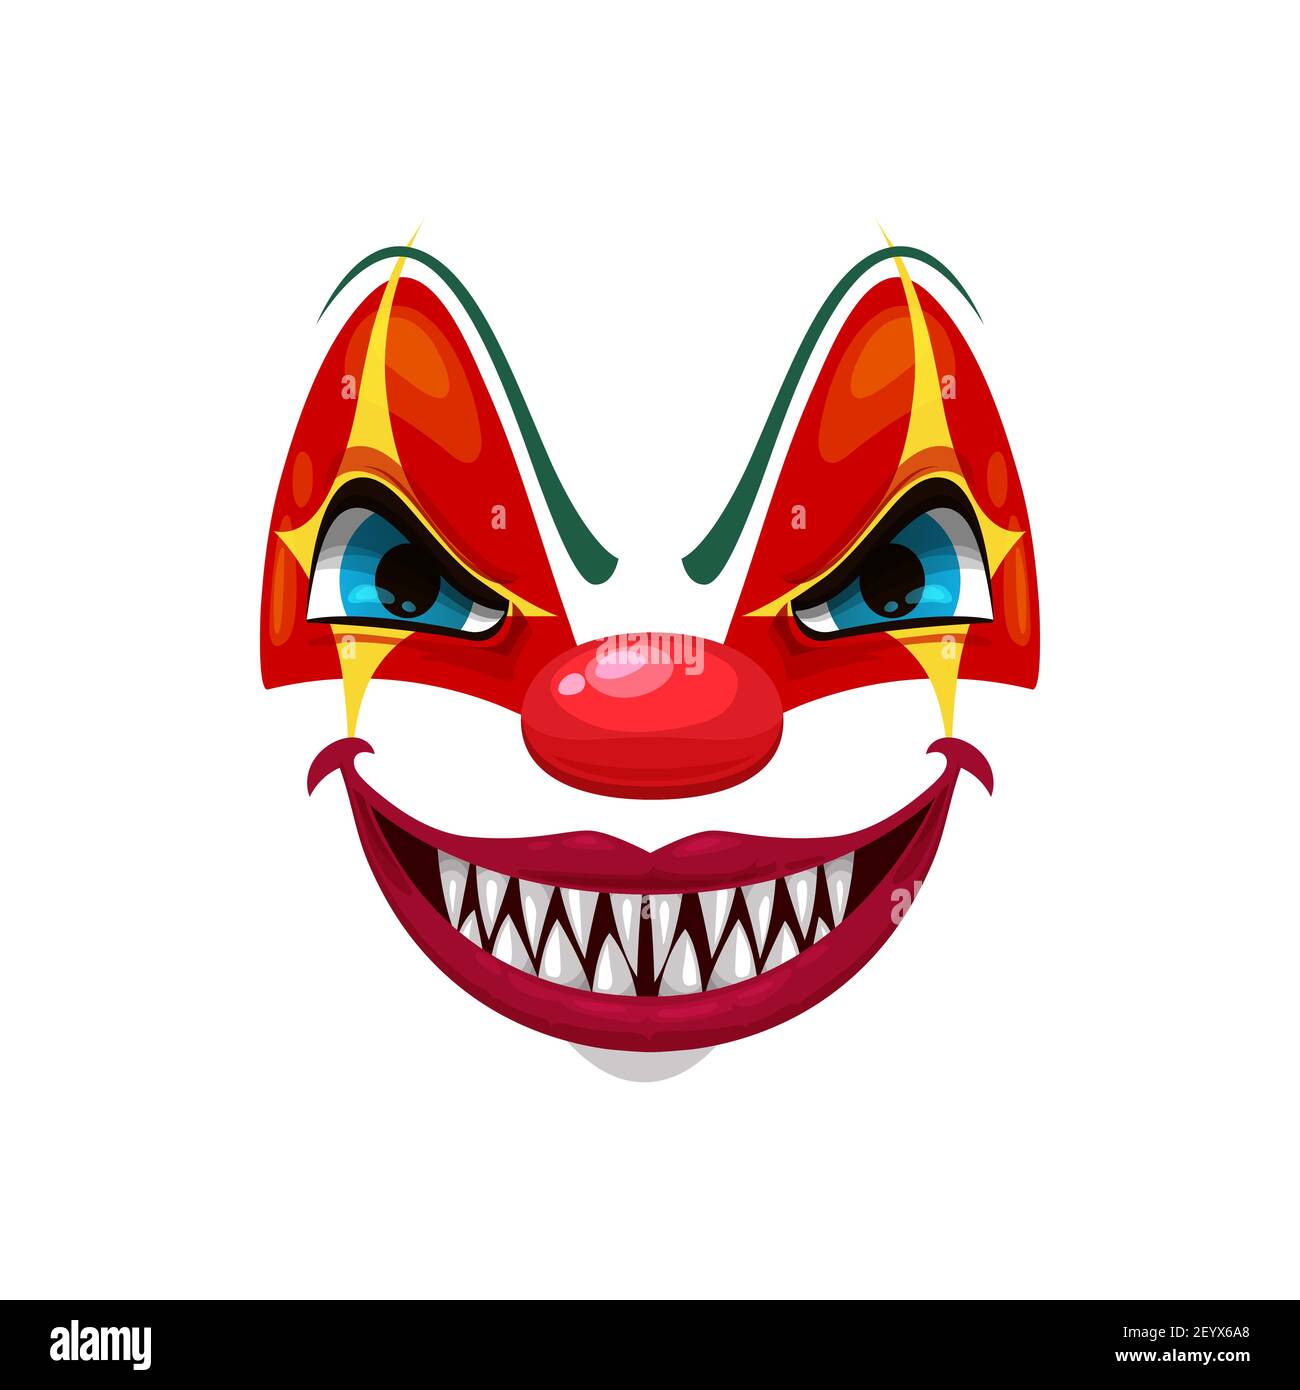 Icona del vettore del volto sorridente del clown spaventoso, maschera funster con trucco, naso rosso, occhi squinted e sorriso creepy con denti gialli affilati. Personaggio di Halloween Illustrazione Vettoriale